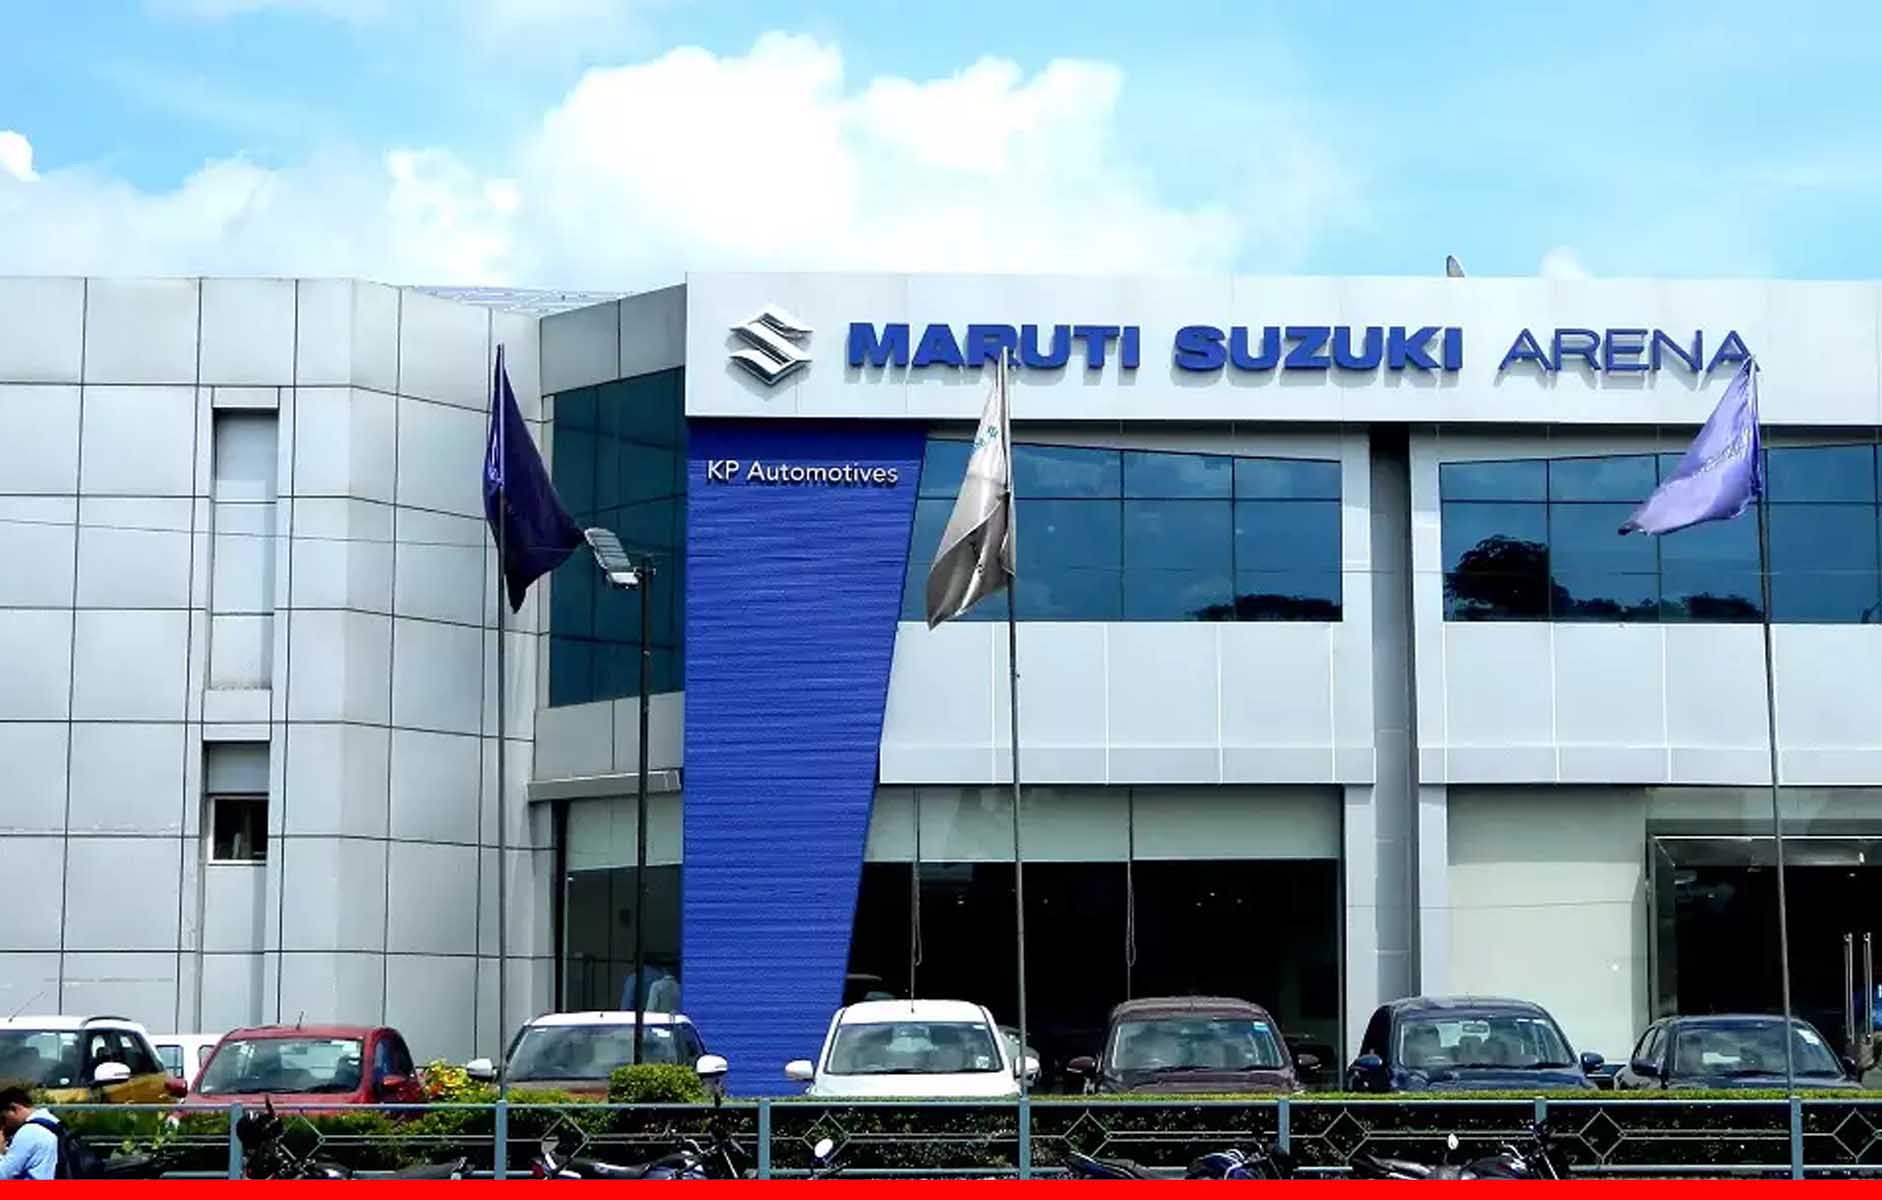 भारतीय प्रतिस्पर्धा आयोग ने लगाया Maruti Suzuki को 200 करोड़ रुपये का जुर्माना